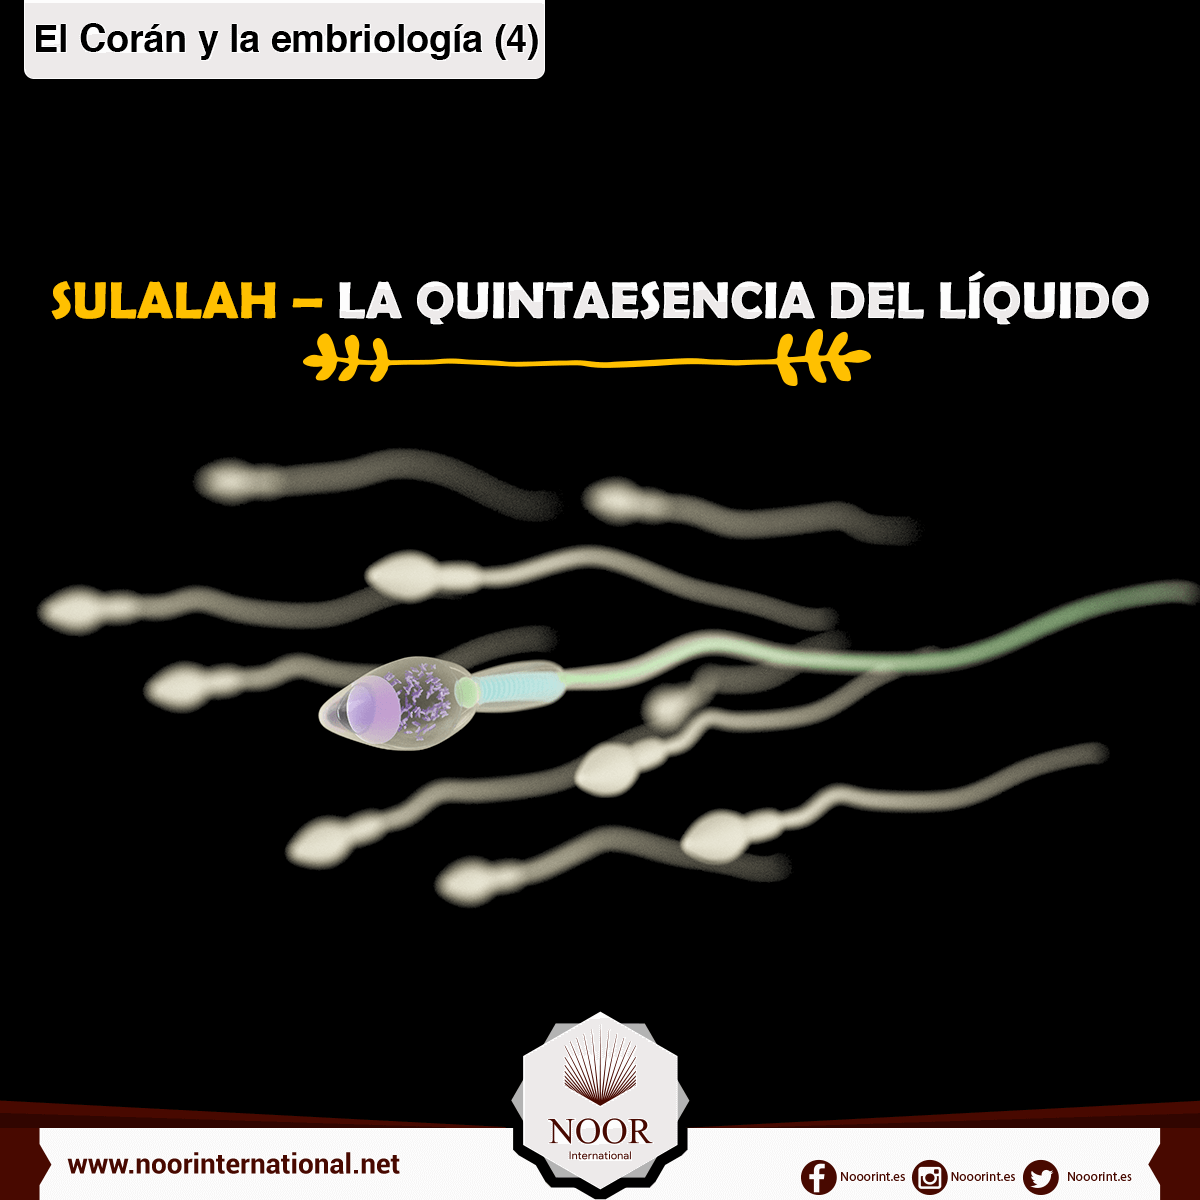 El Corán y la embriología: Sulalah, la quintaesencia del líquido